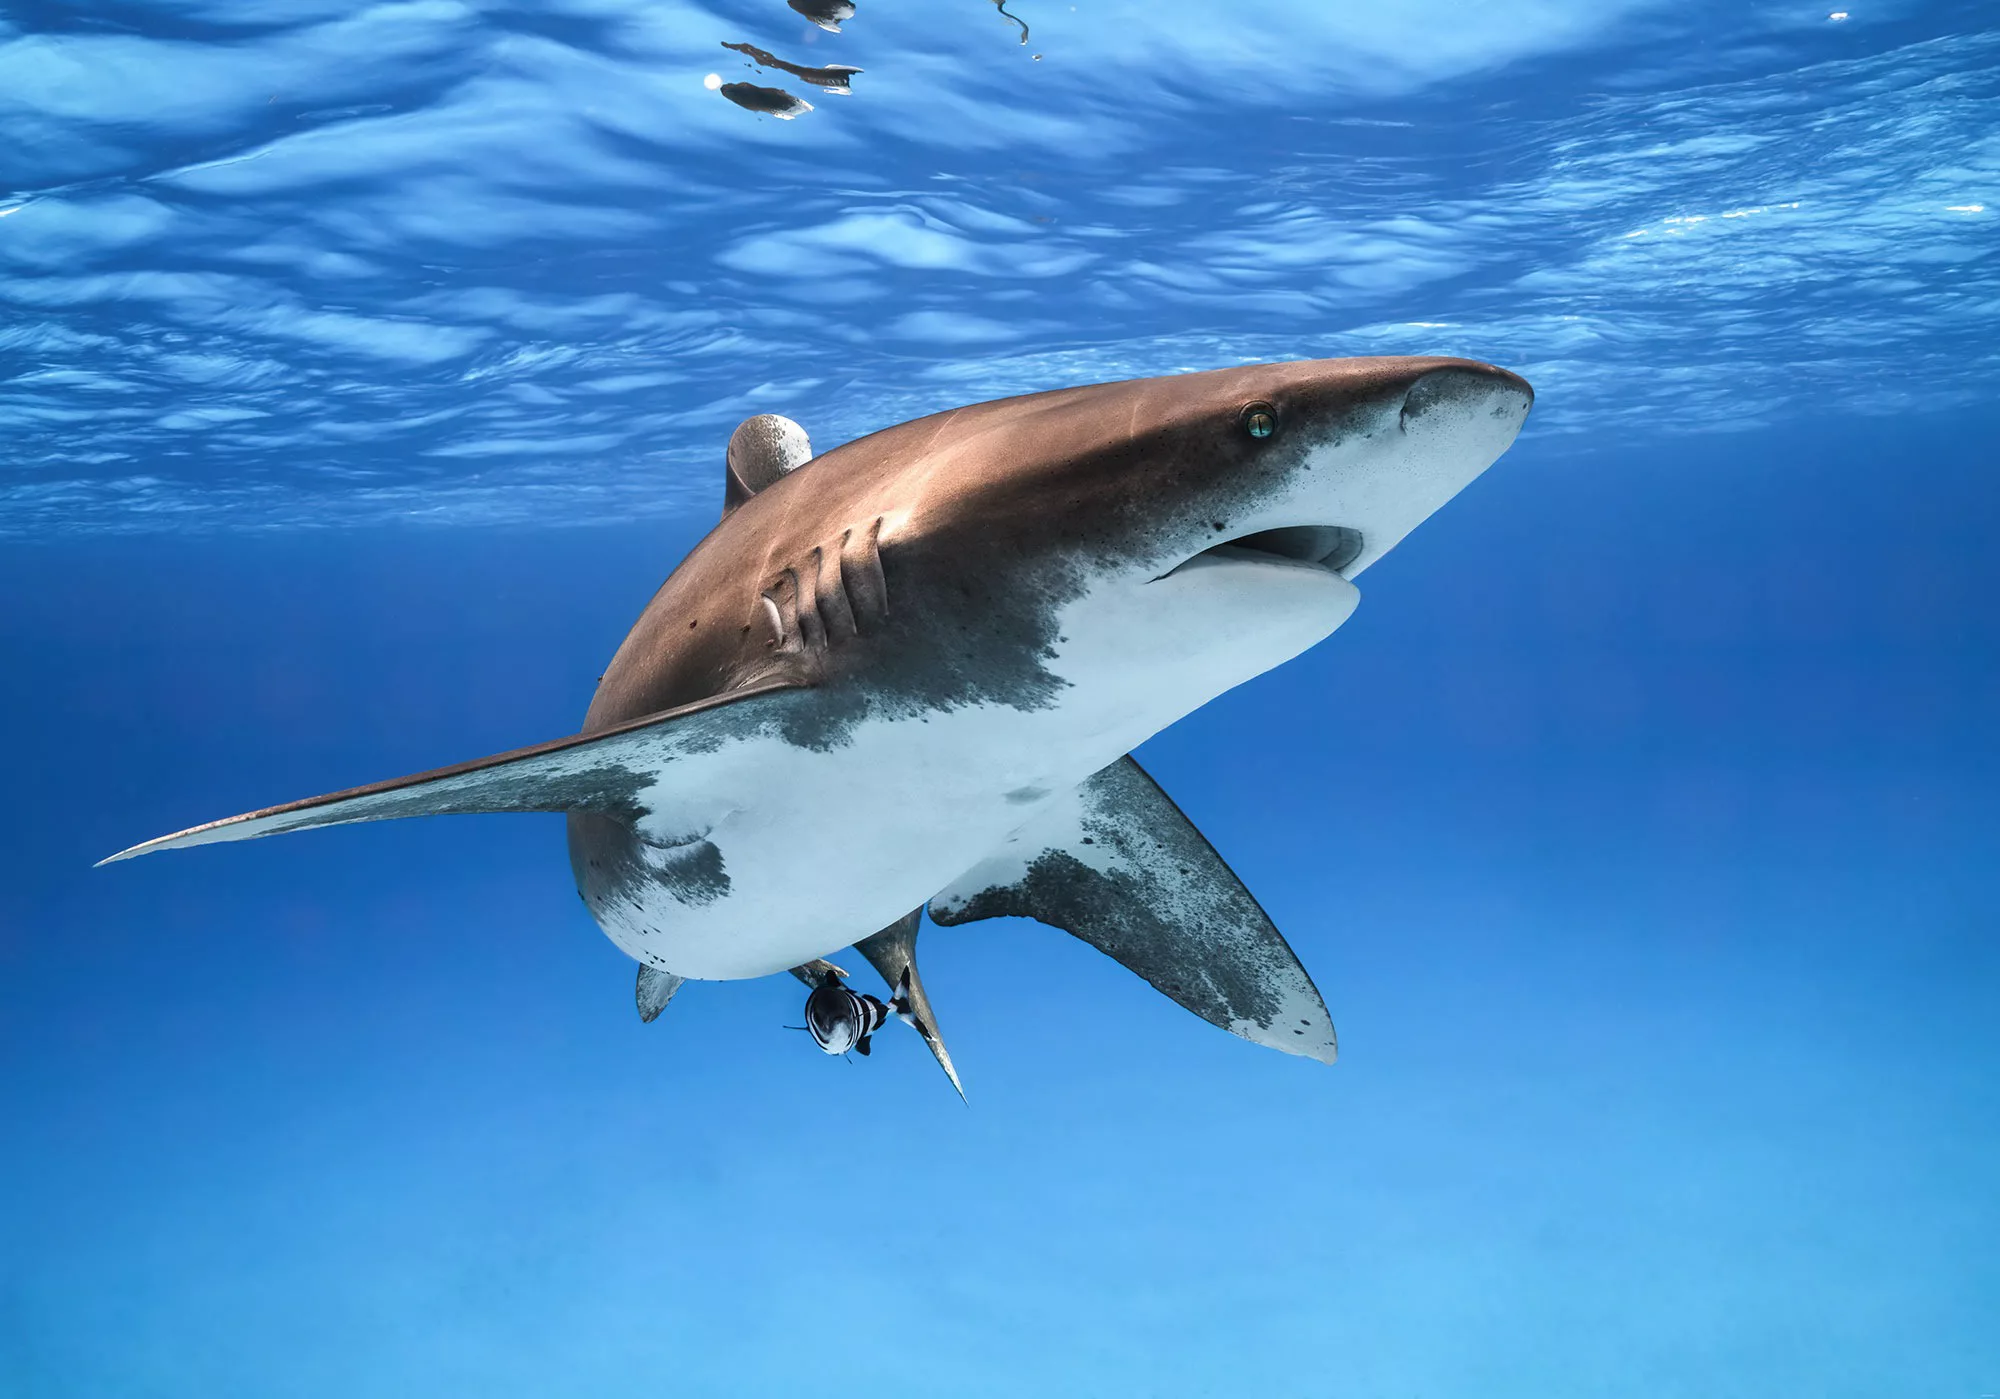 KOMAR Vlies Fototapete - Great White Shark - Größe 400 x 280 cm mehrfarbig günstig online kaufen